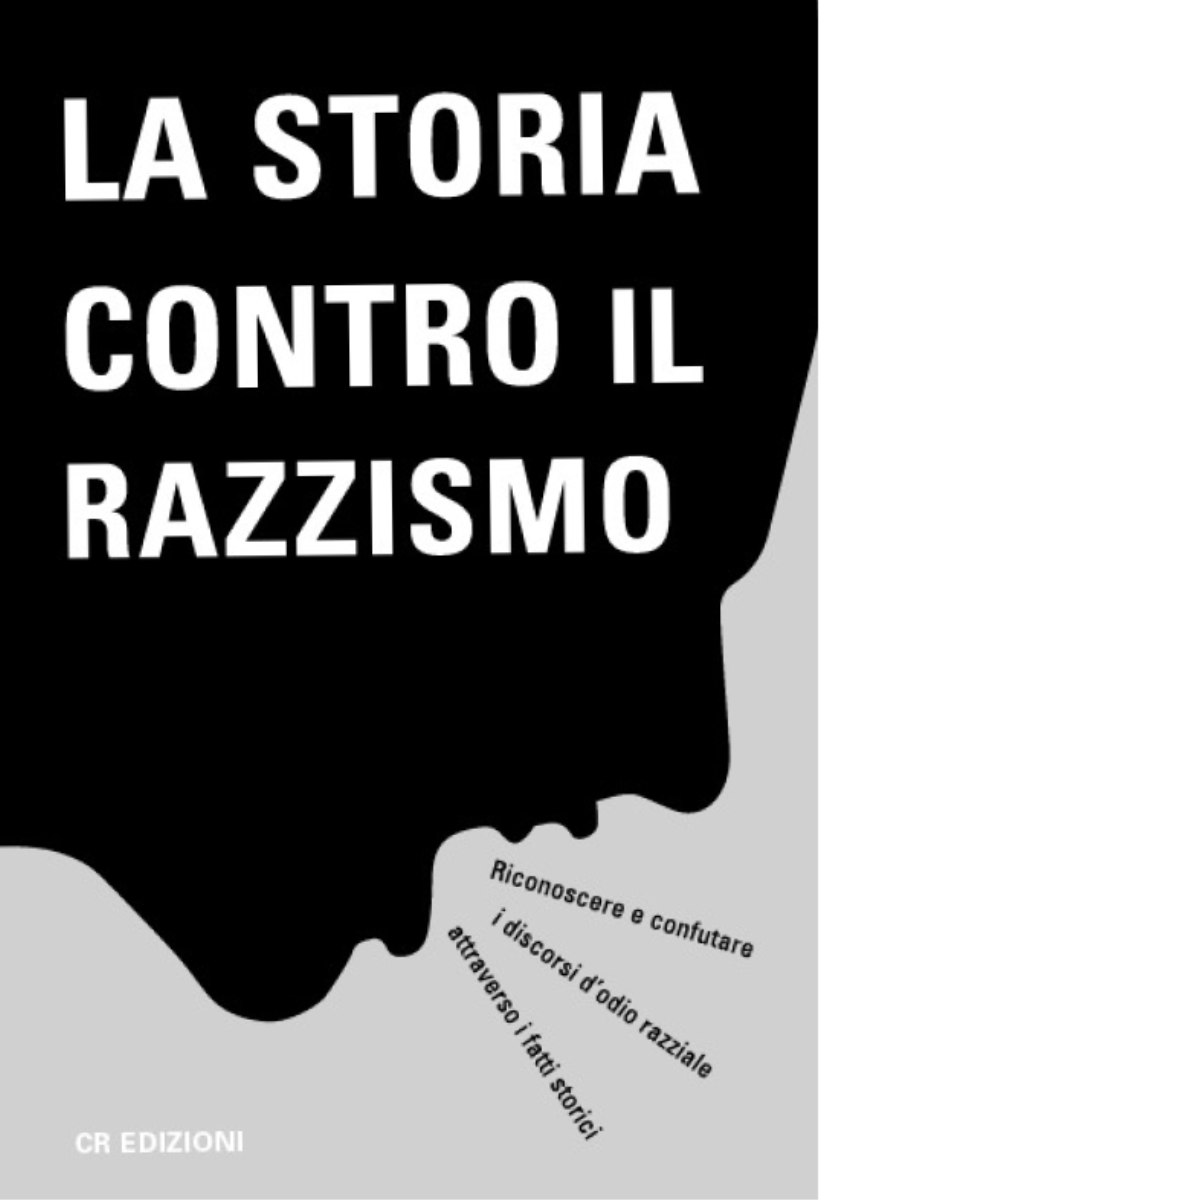 La Storia contro il razzismo - Matteo Minelli - CR, 2021 libro usato